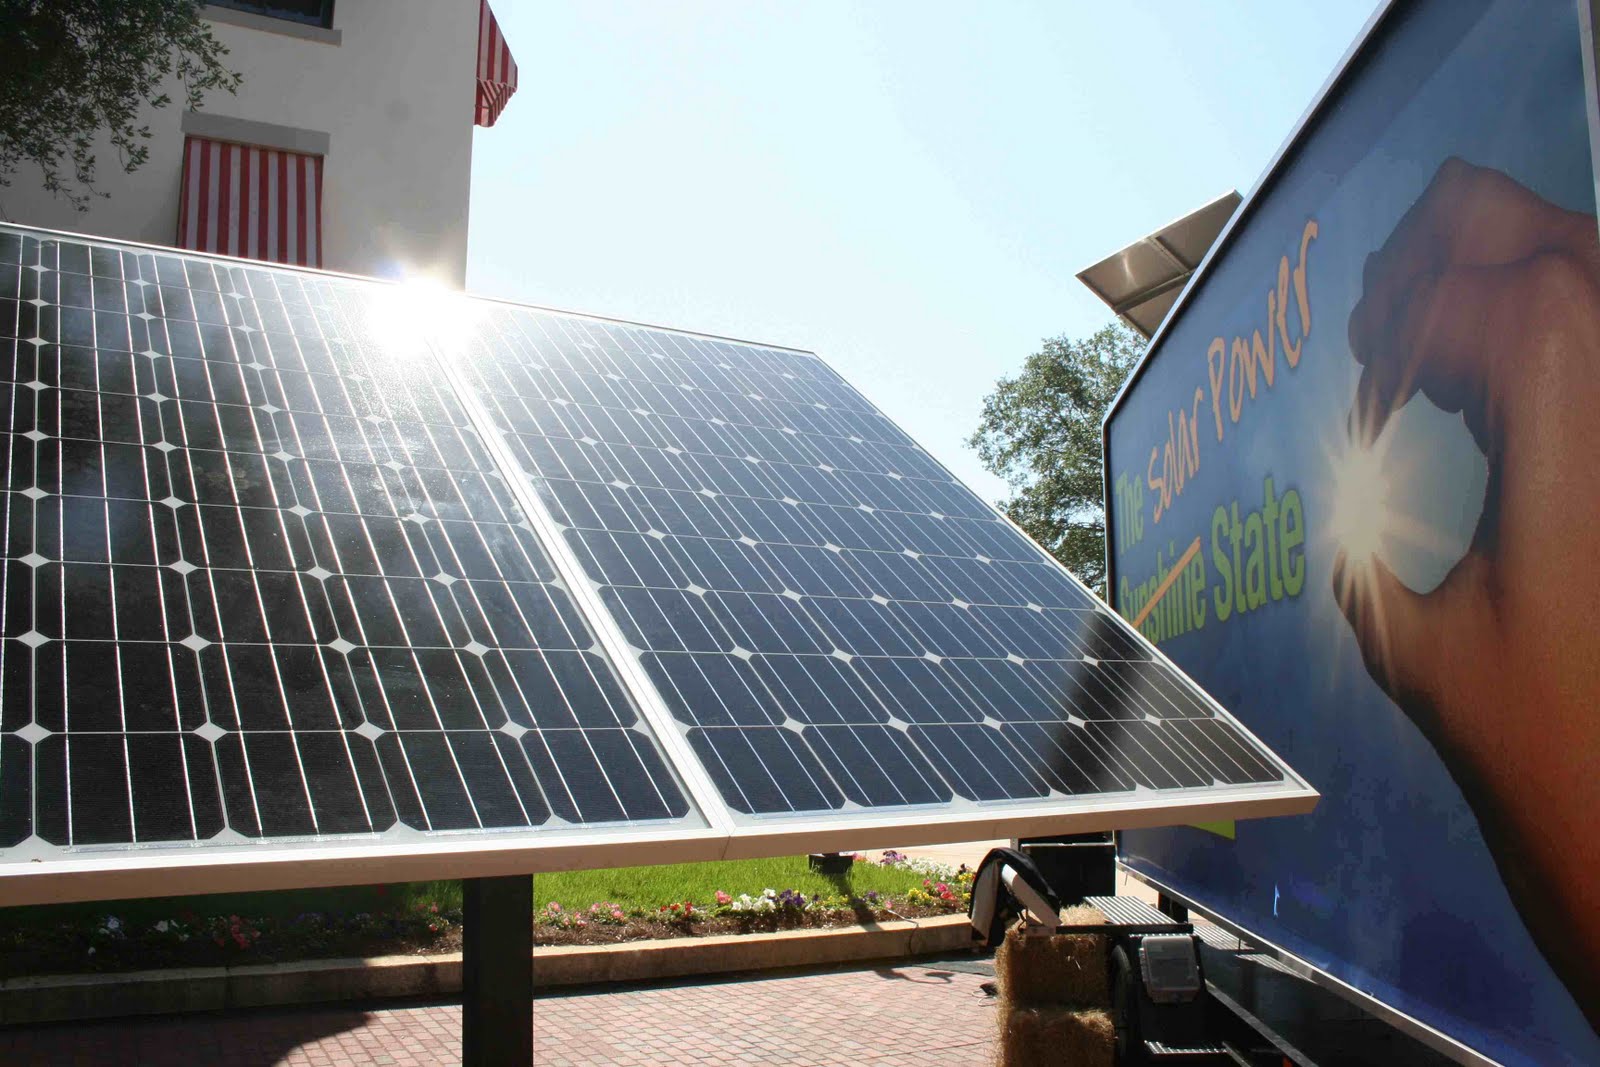 florida-s-solar-energy-rebates-to-end-next-year-orlando-sentinel